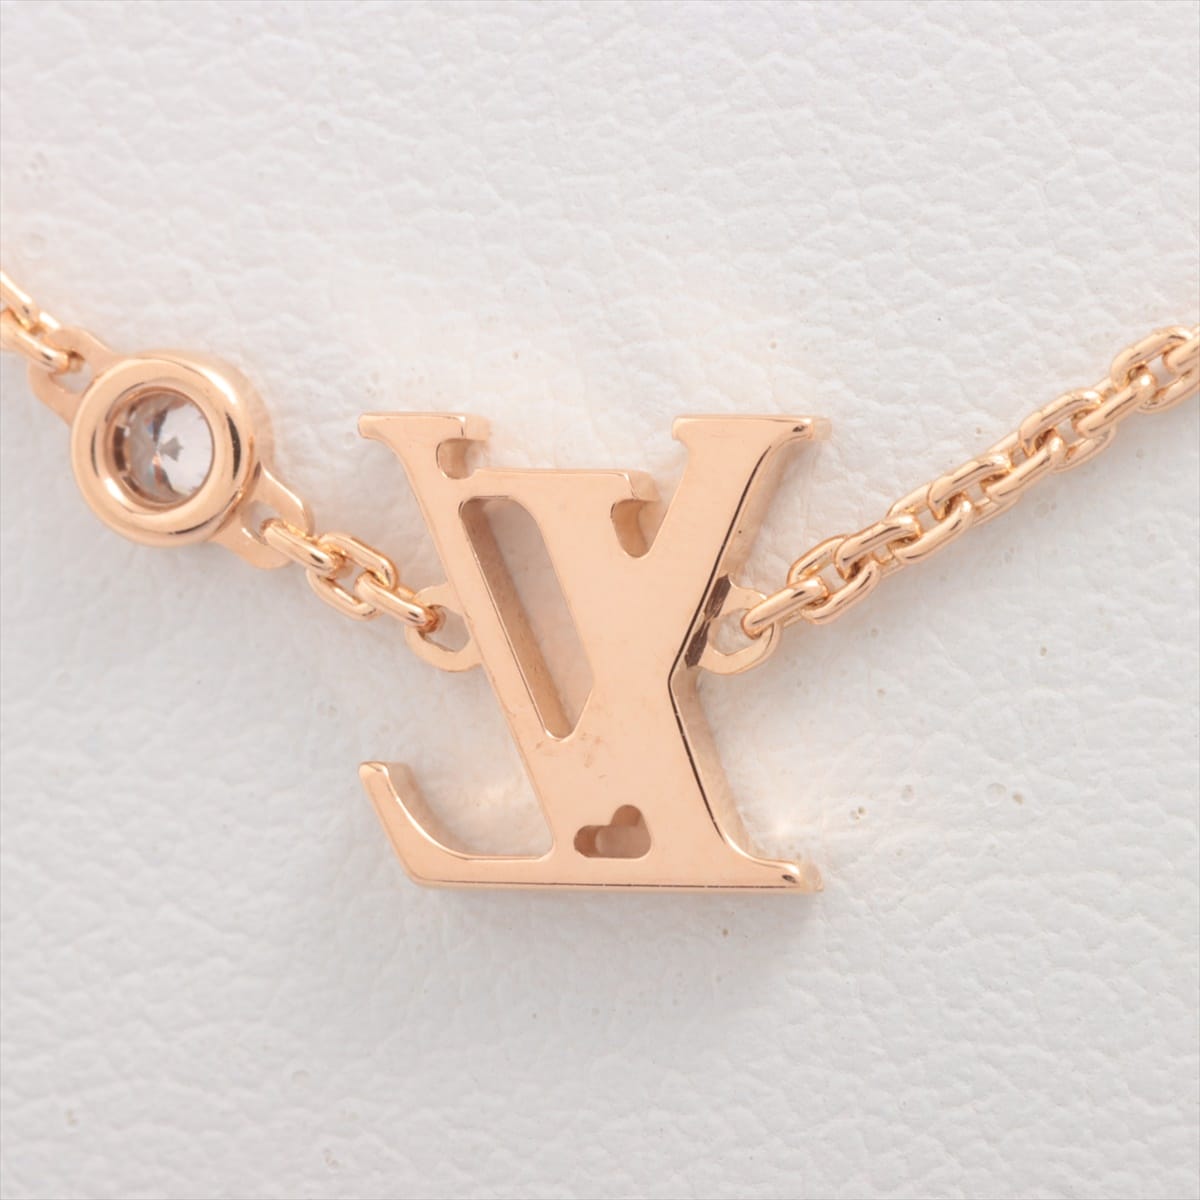 Louis Vuitton Pandantif Idylle Blossom LV diamond Necklace 750(PG) 3.9g